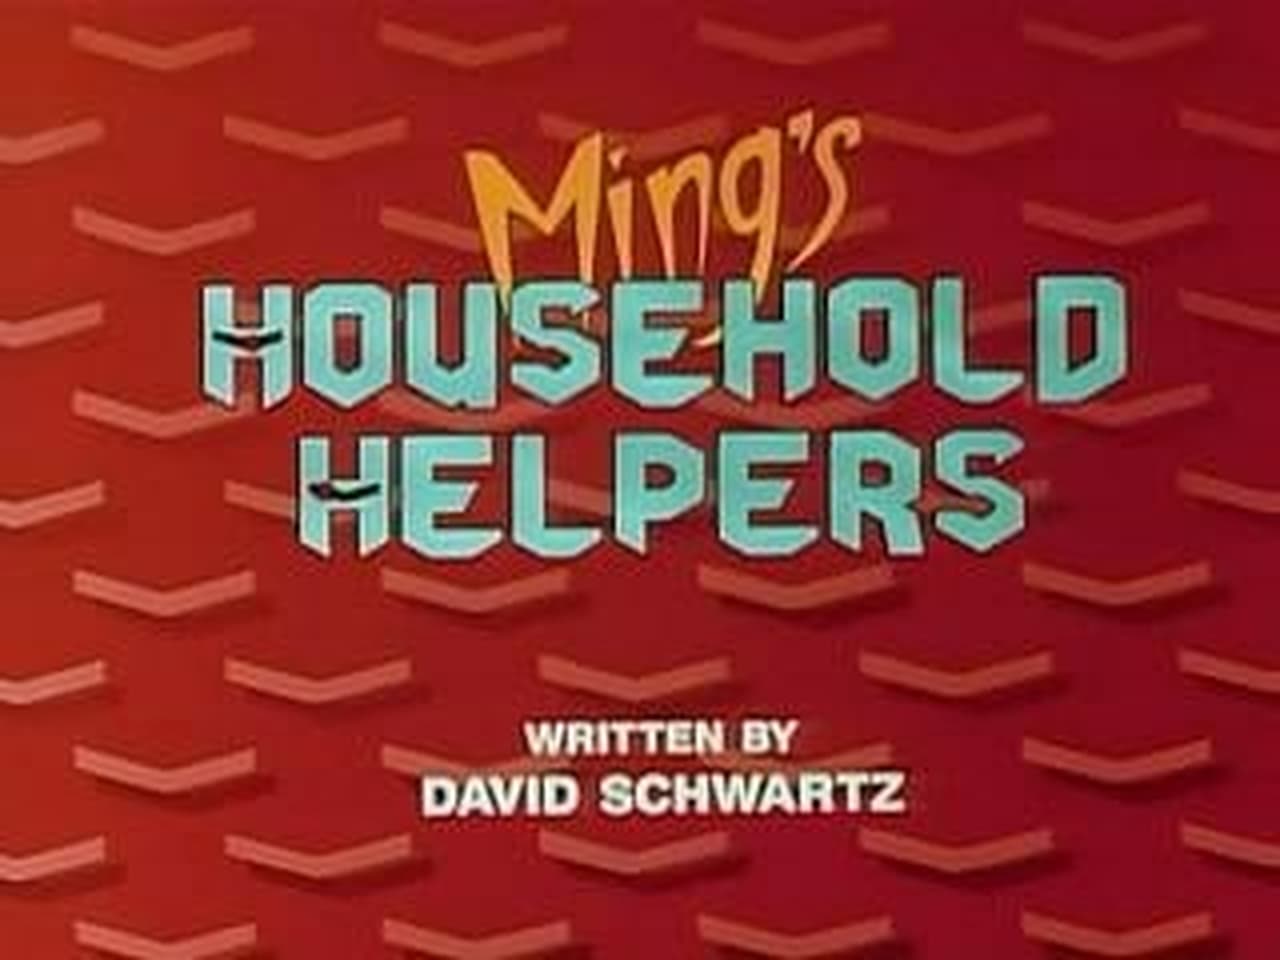 Mings Household Helpers